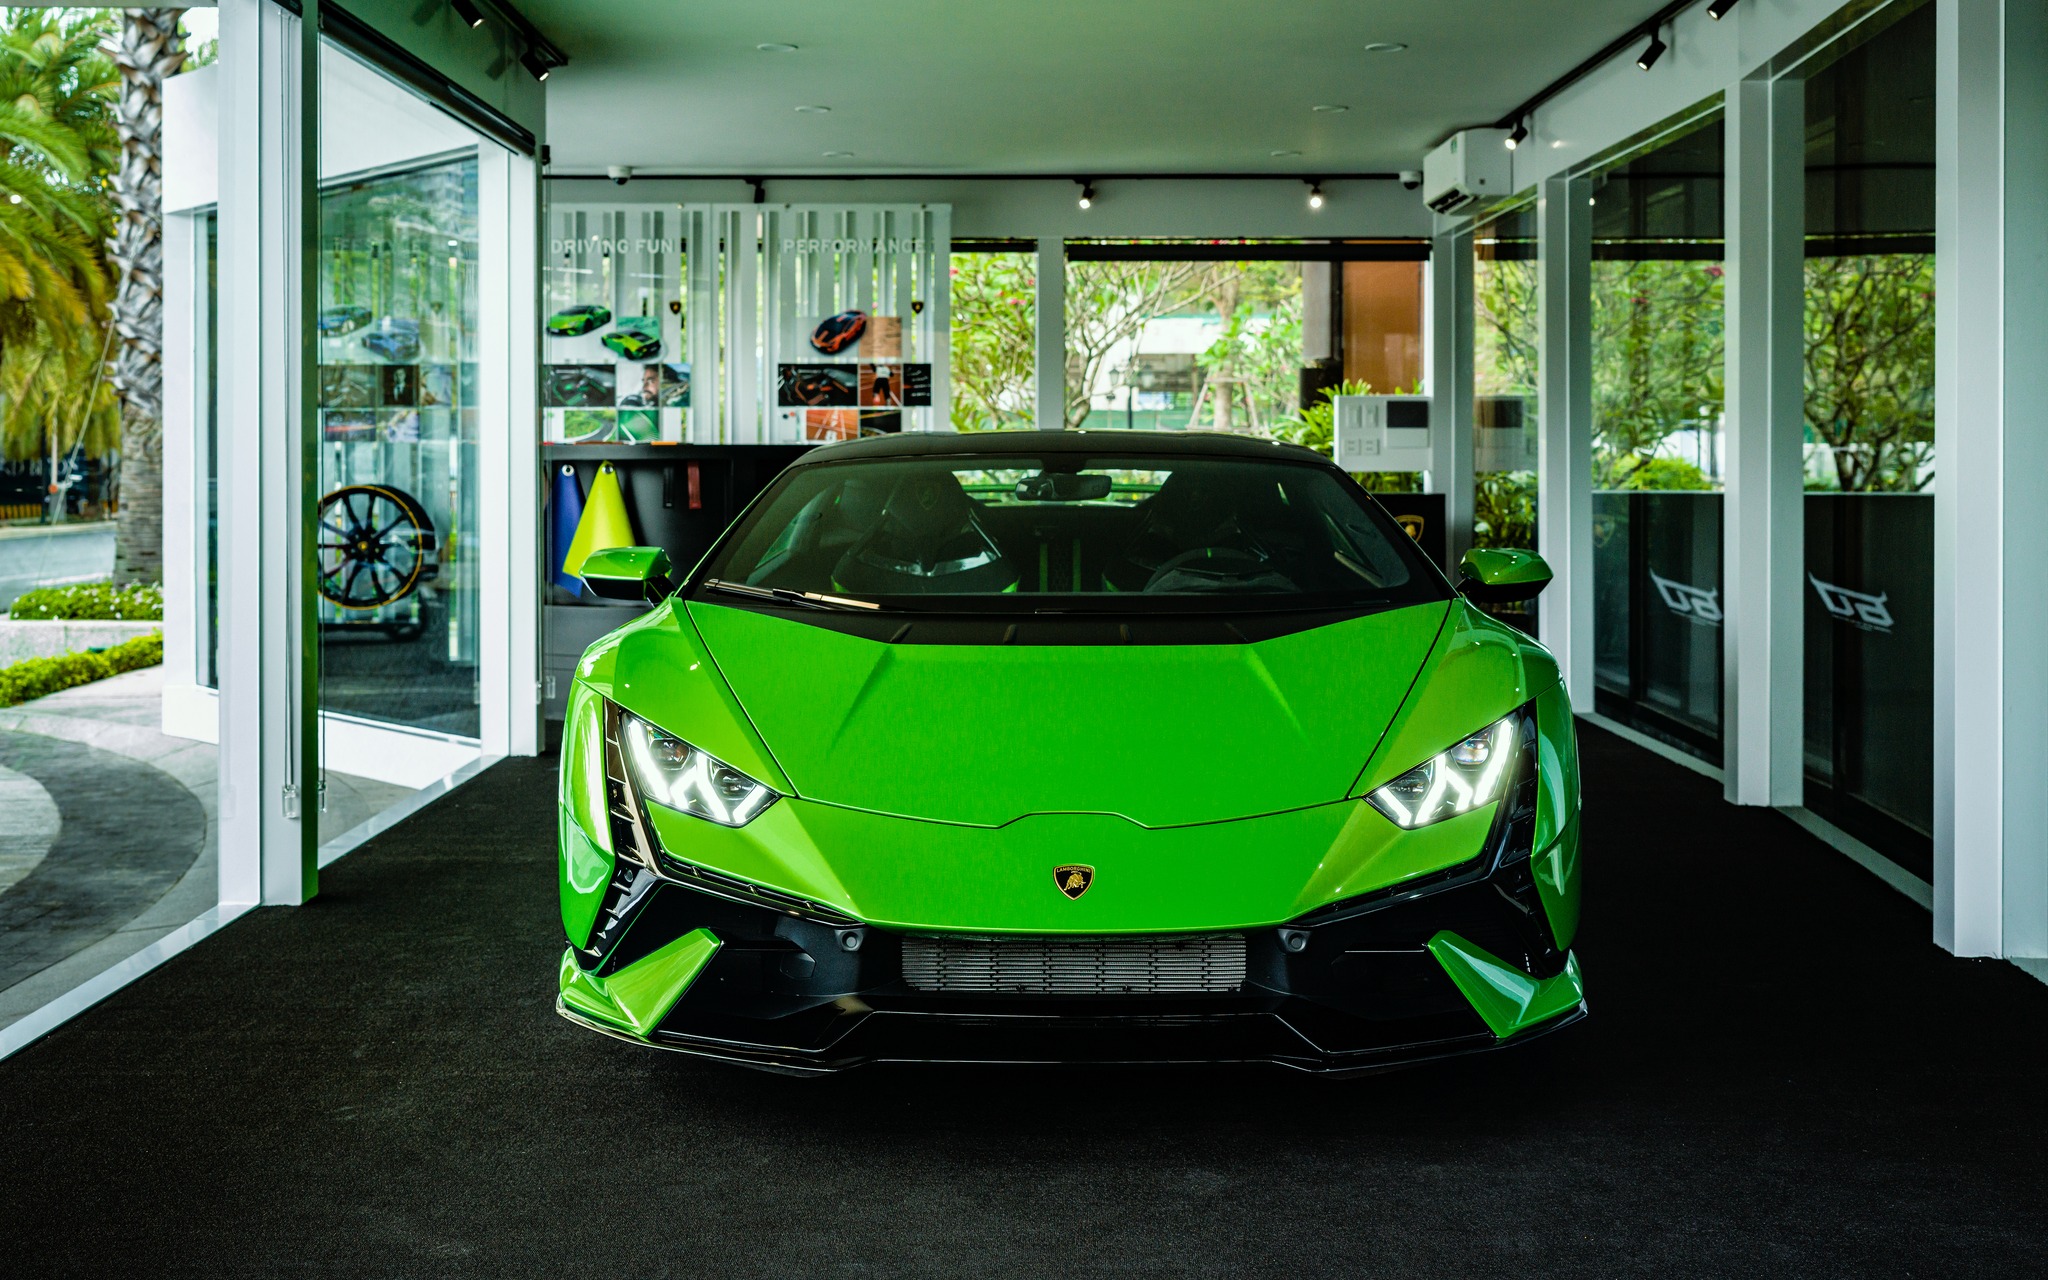 Chiêm ngưỡng bộ đôi hàng hiệu & siêu xe Lamborghini Huracan Tecnica tại Grand Marina, Gallery